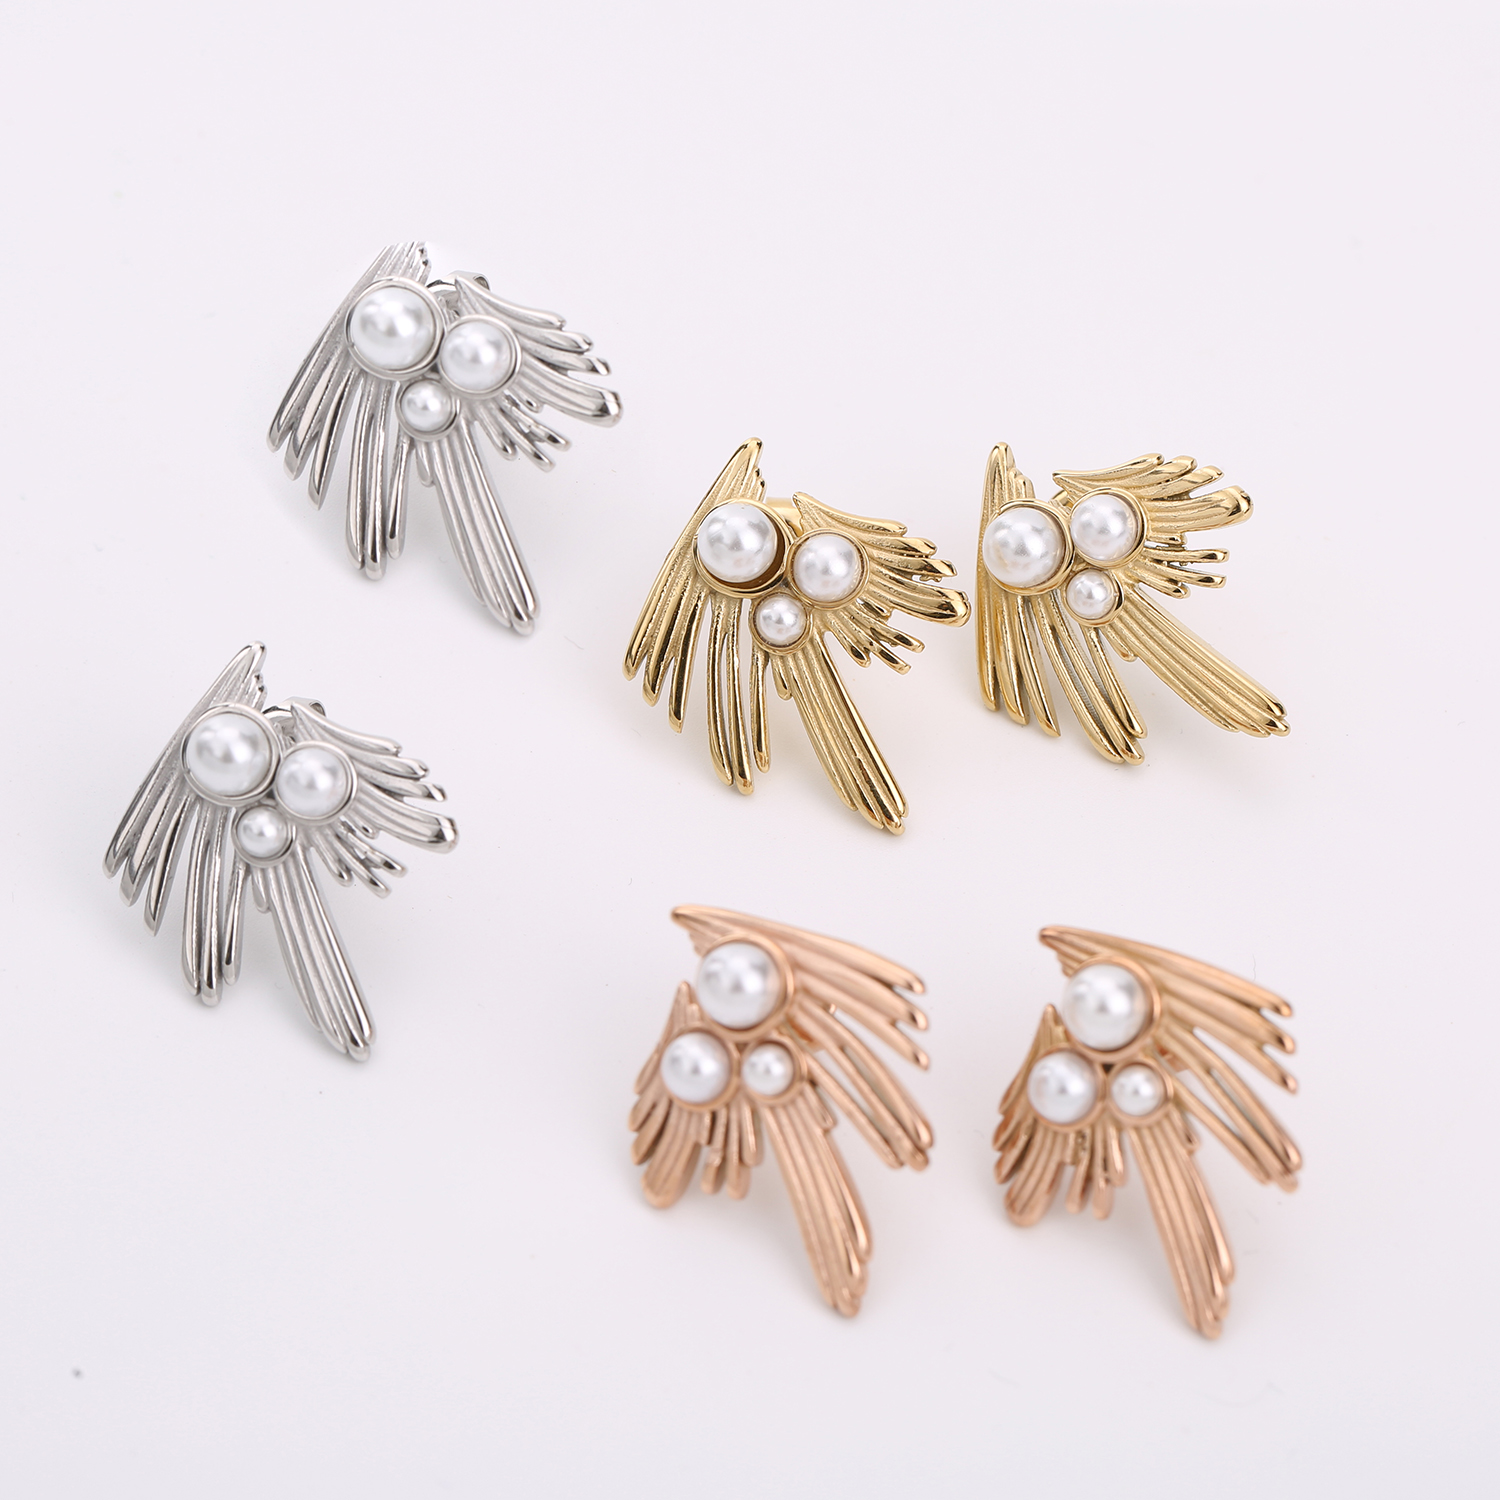 Pearl fashion earrings-1 (2)hk5